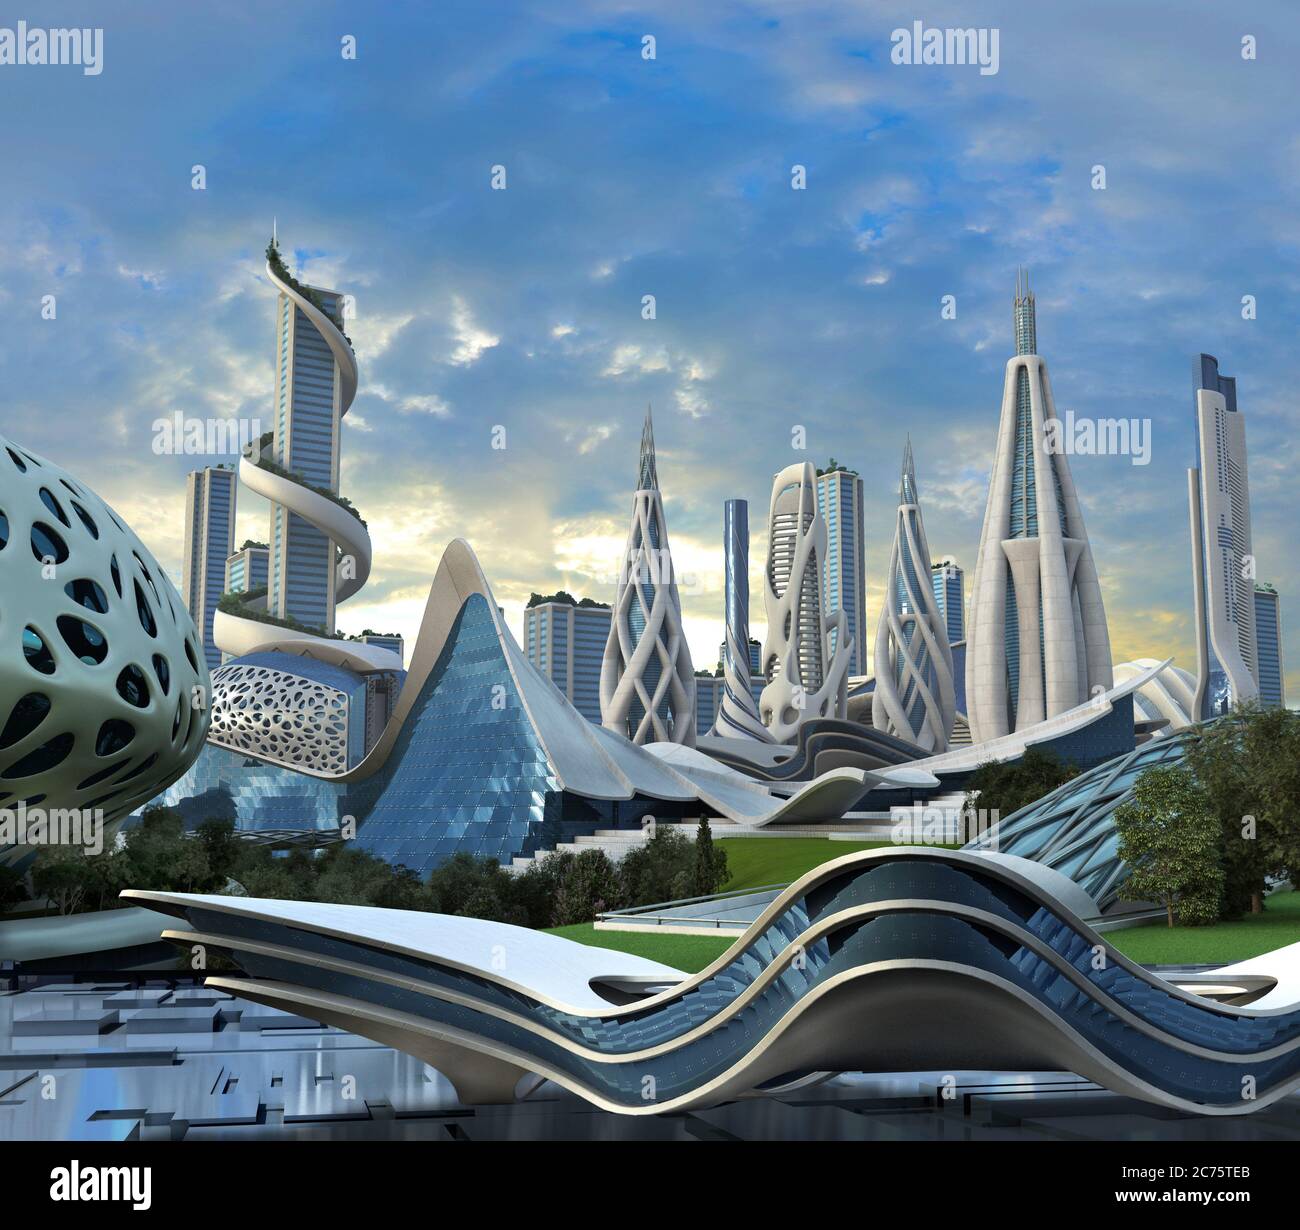 Ilustración 3D de una ciudad futurista con edificios de gran altura en un diseño arquitectónico orgánico para fondos de ciencia ficción. Foto de stock